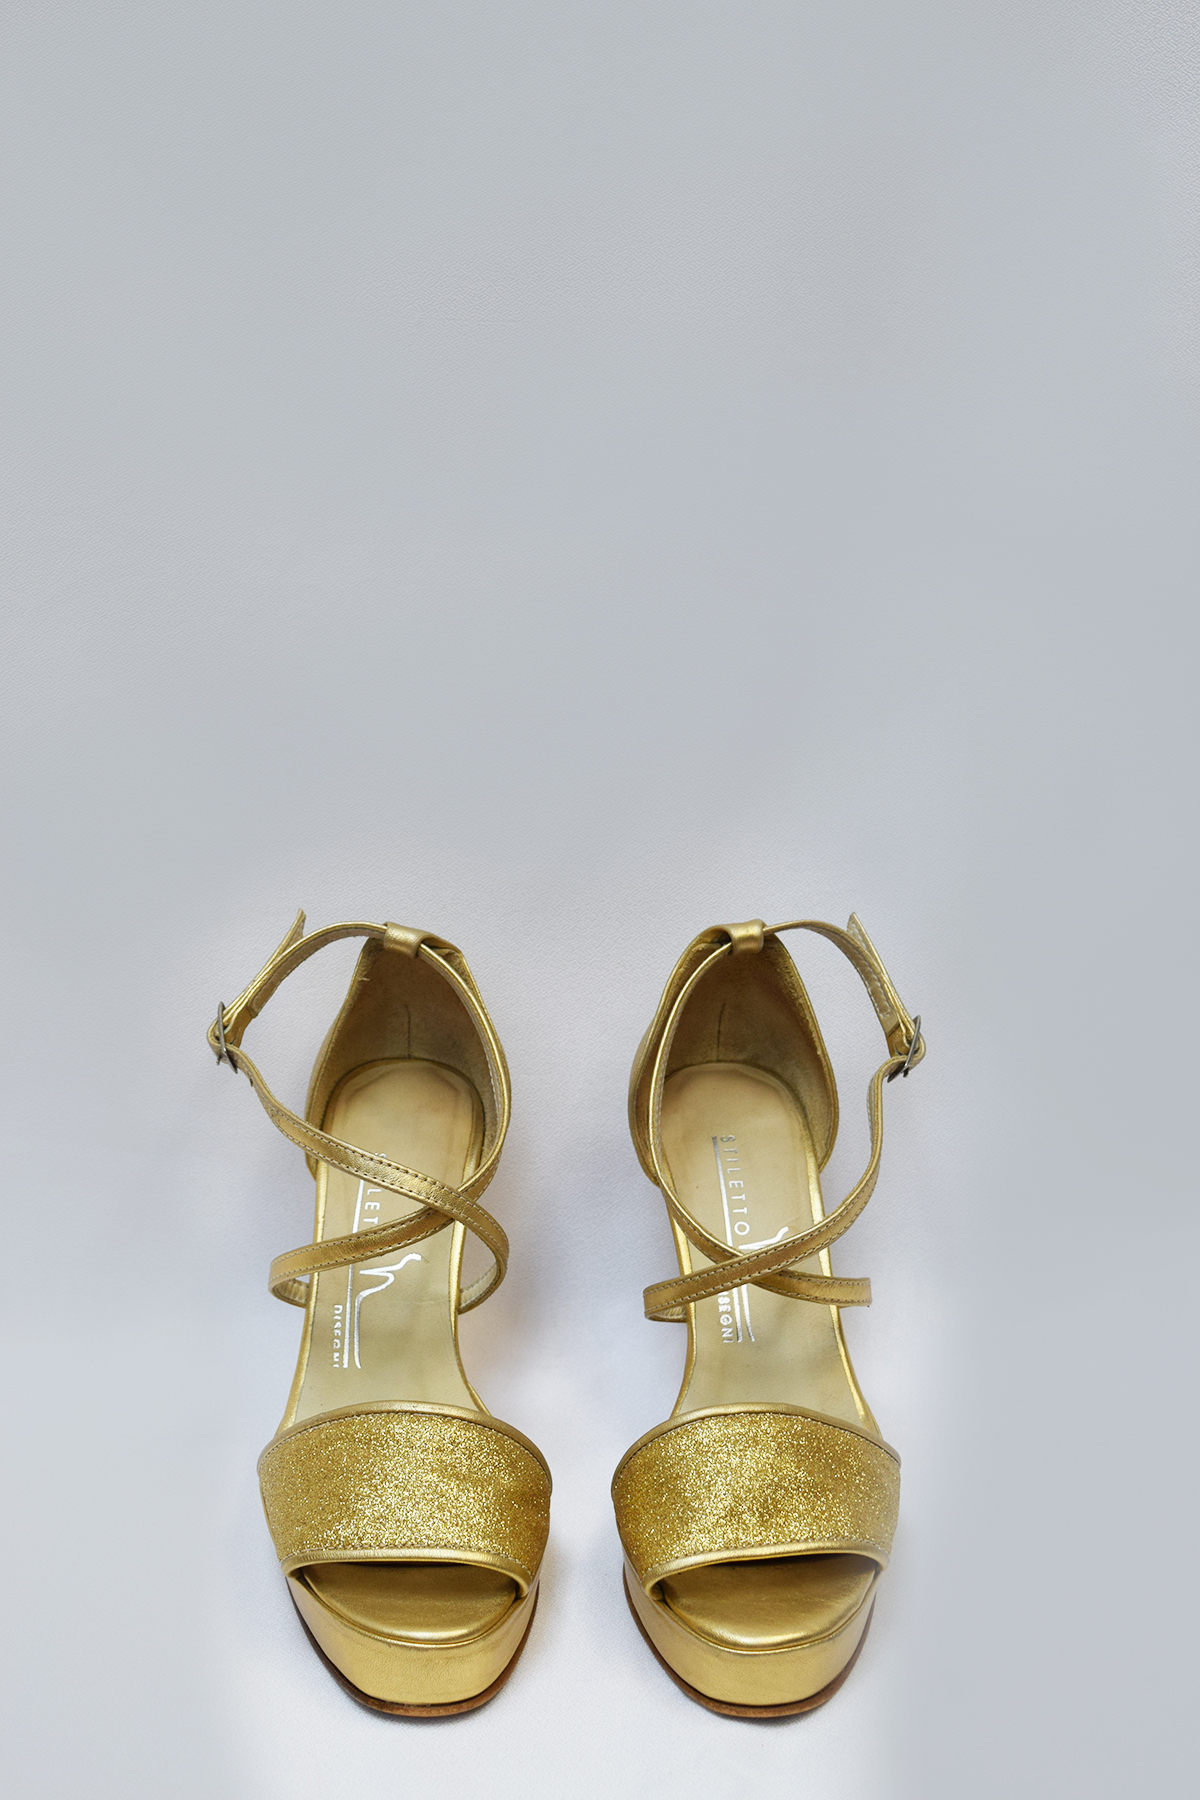 Sandalias doradas